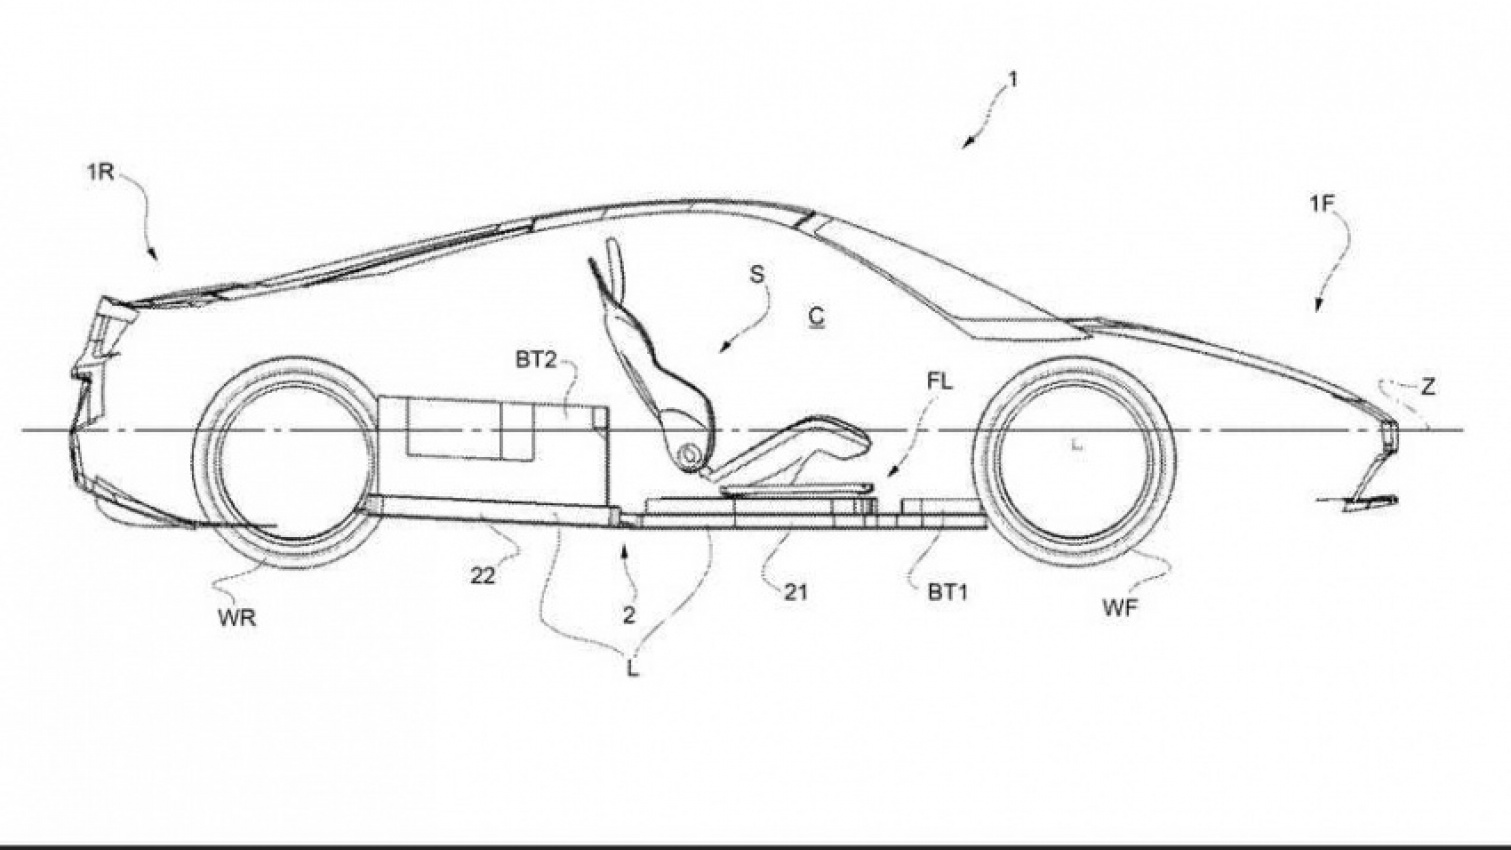 autos, cars, ferrari, ferrari electric sports car patent offers glimpse of ev future